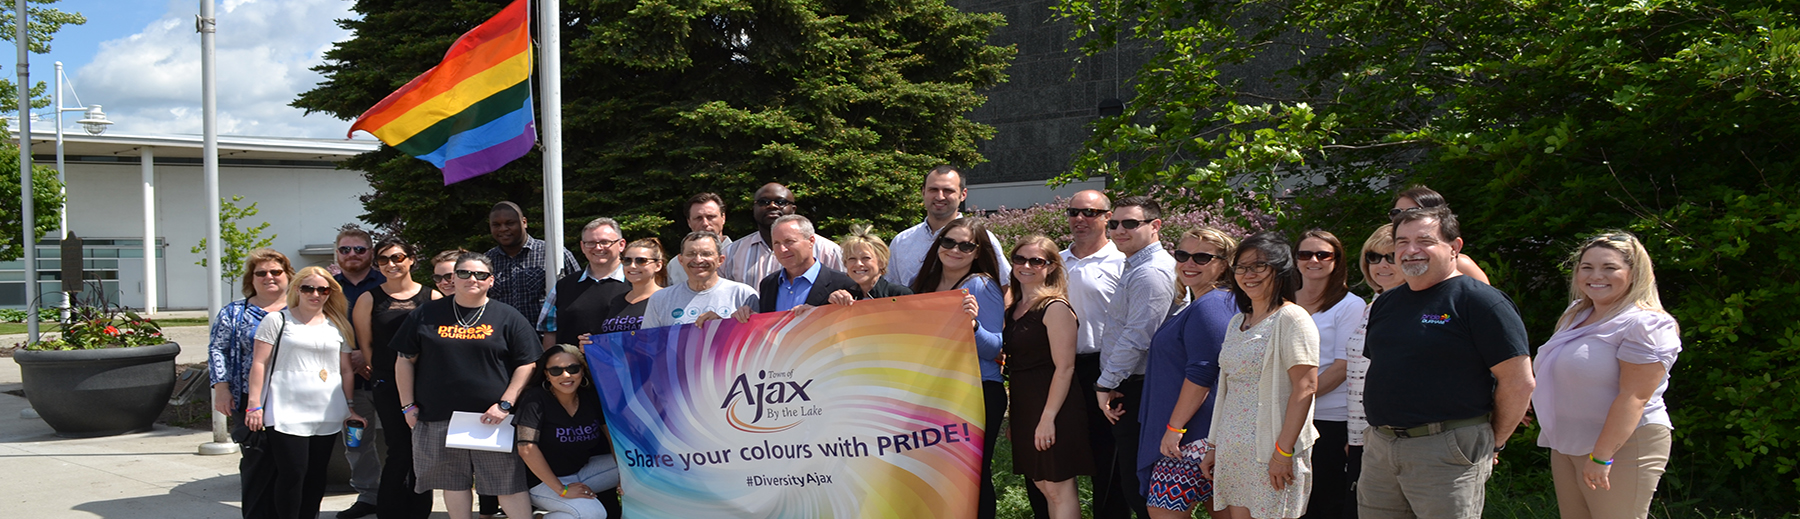 Celebrating Pride in Ajax